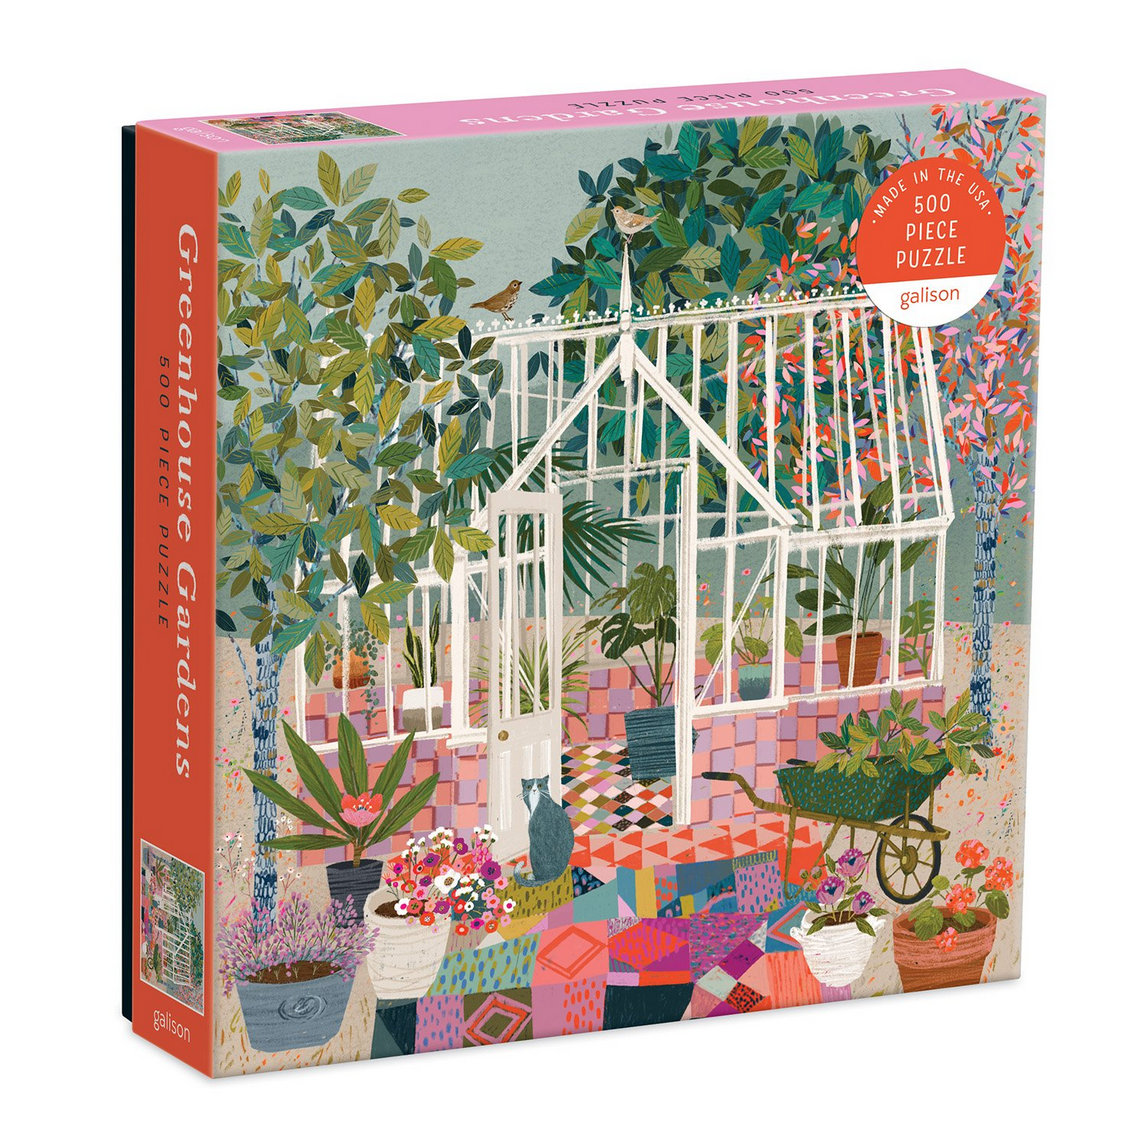 Greenhouse Garden Galison Puzzle 500pcs